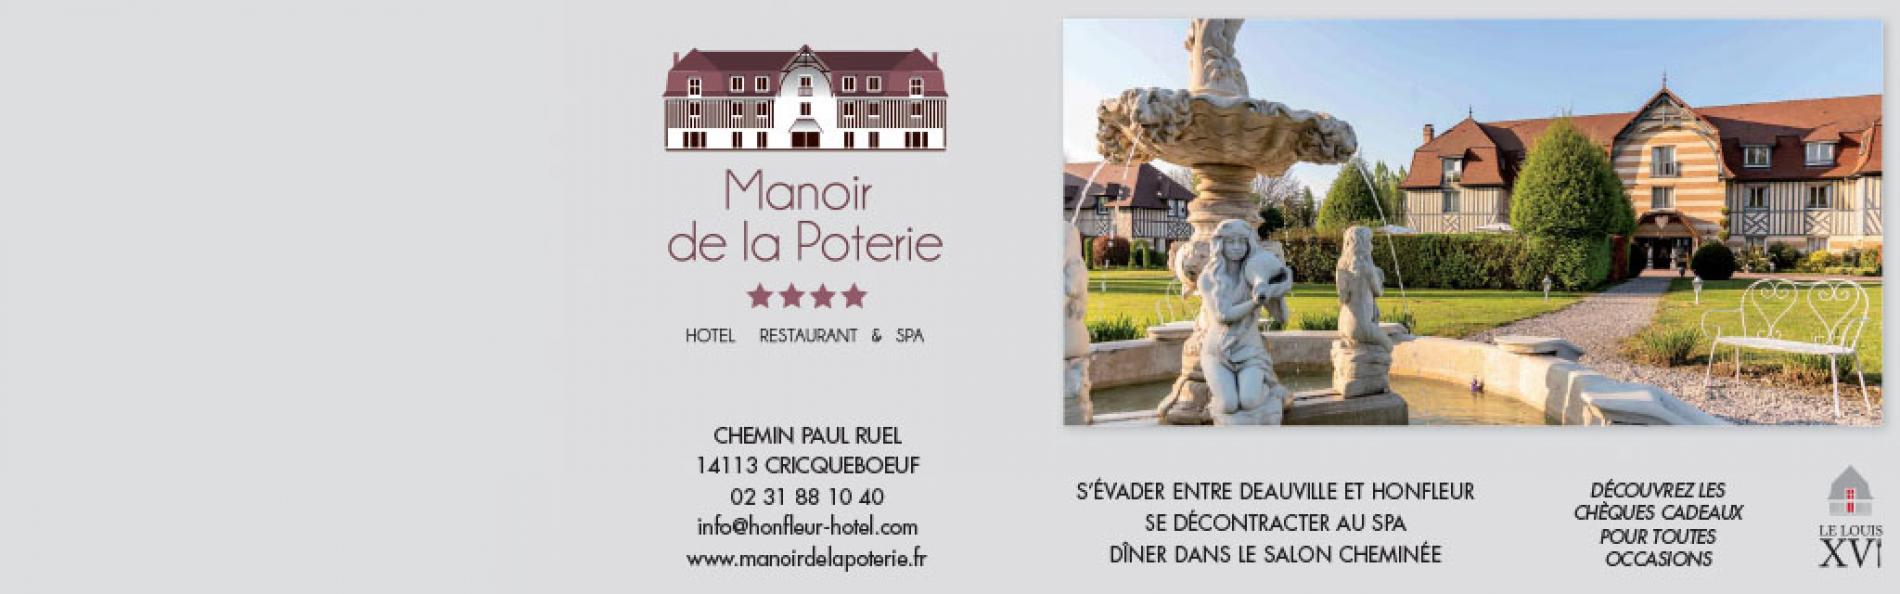 Hotel proche Honfleur l'hotel Le Manoir de la Poterie vous accueille en Normandie pour un sÃ©jour dÃ©tente.
DotÃ© d'un spa et d'une piscine couverte, l'hotel vous propose des soins.